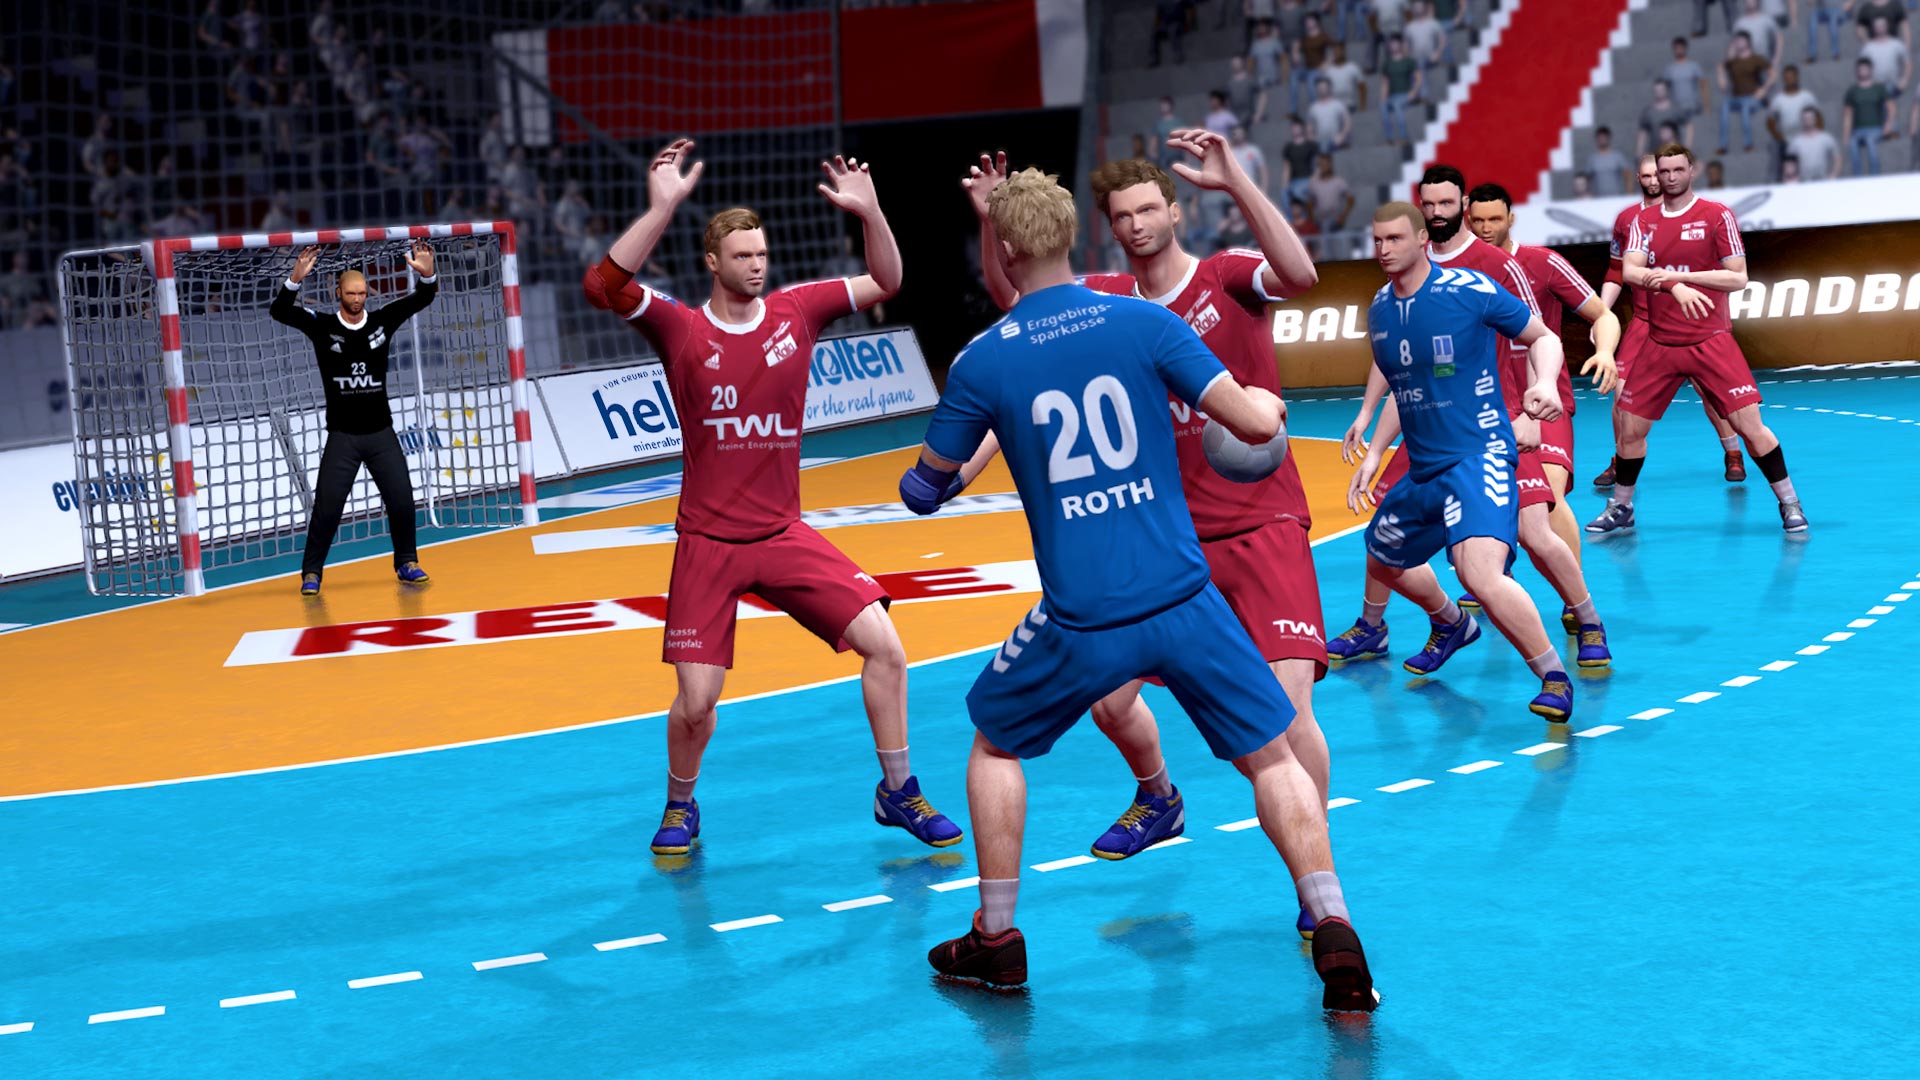 Ahorra un 90% en Handball 17 en Steam